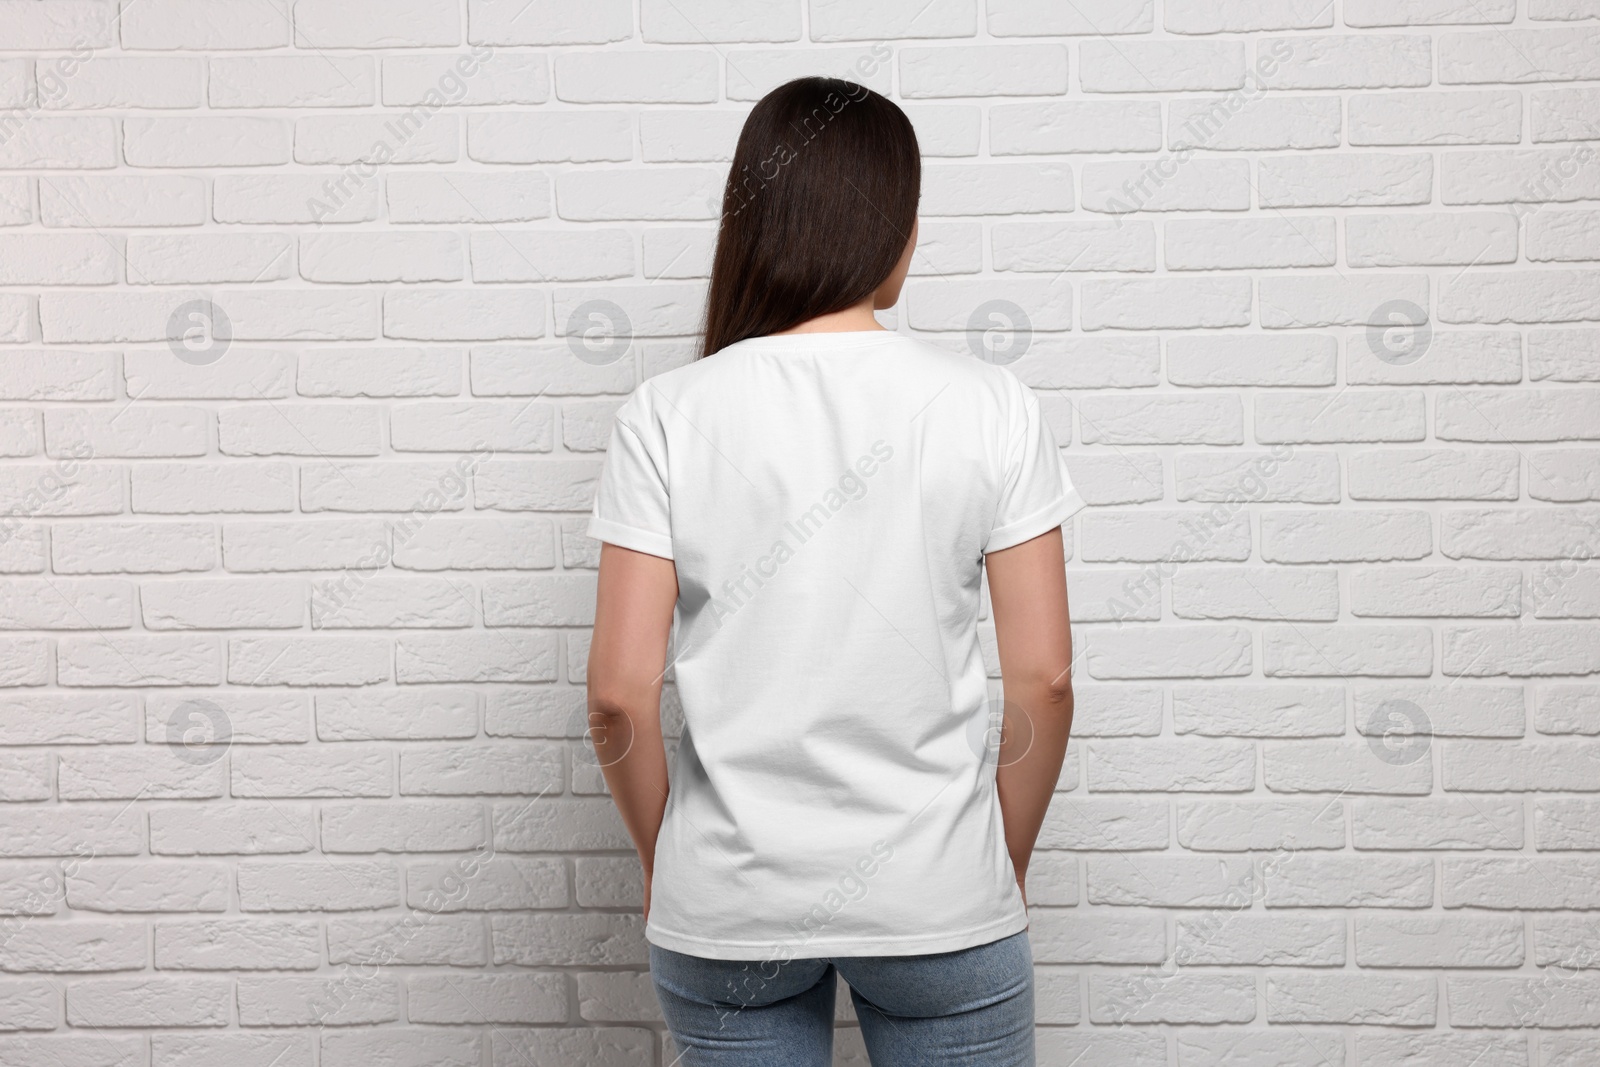 Photo of Woman wearing stylish T-shirt near white brick wall, back view